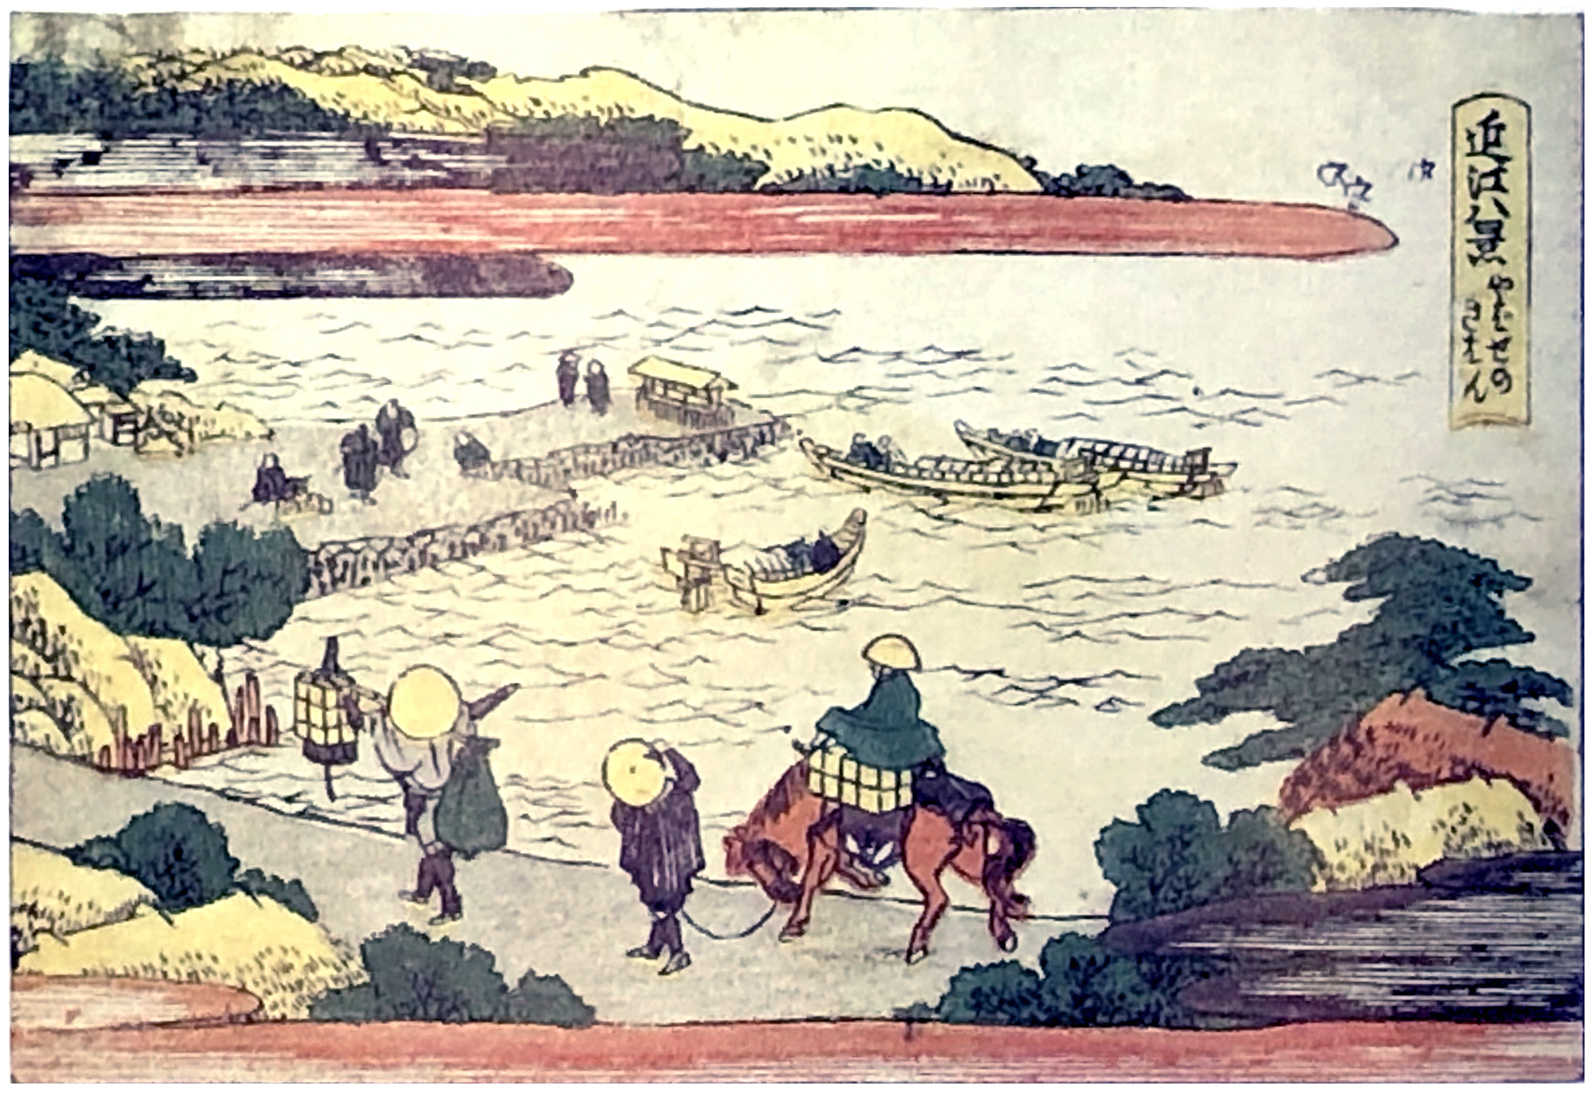 Hokusai - Homing Sailboats at Yabase - 1802 Horizontal Edition